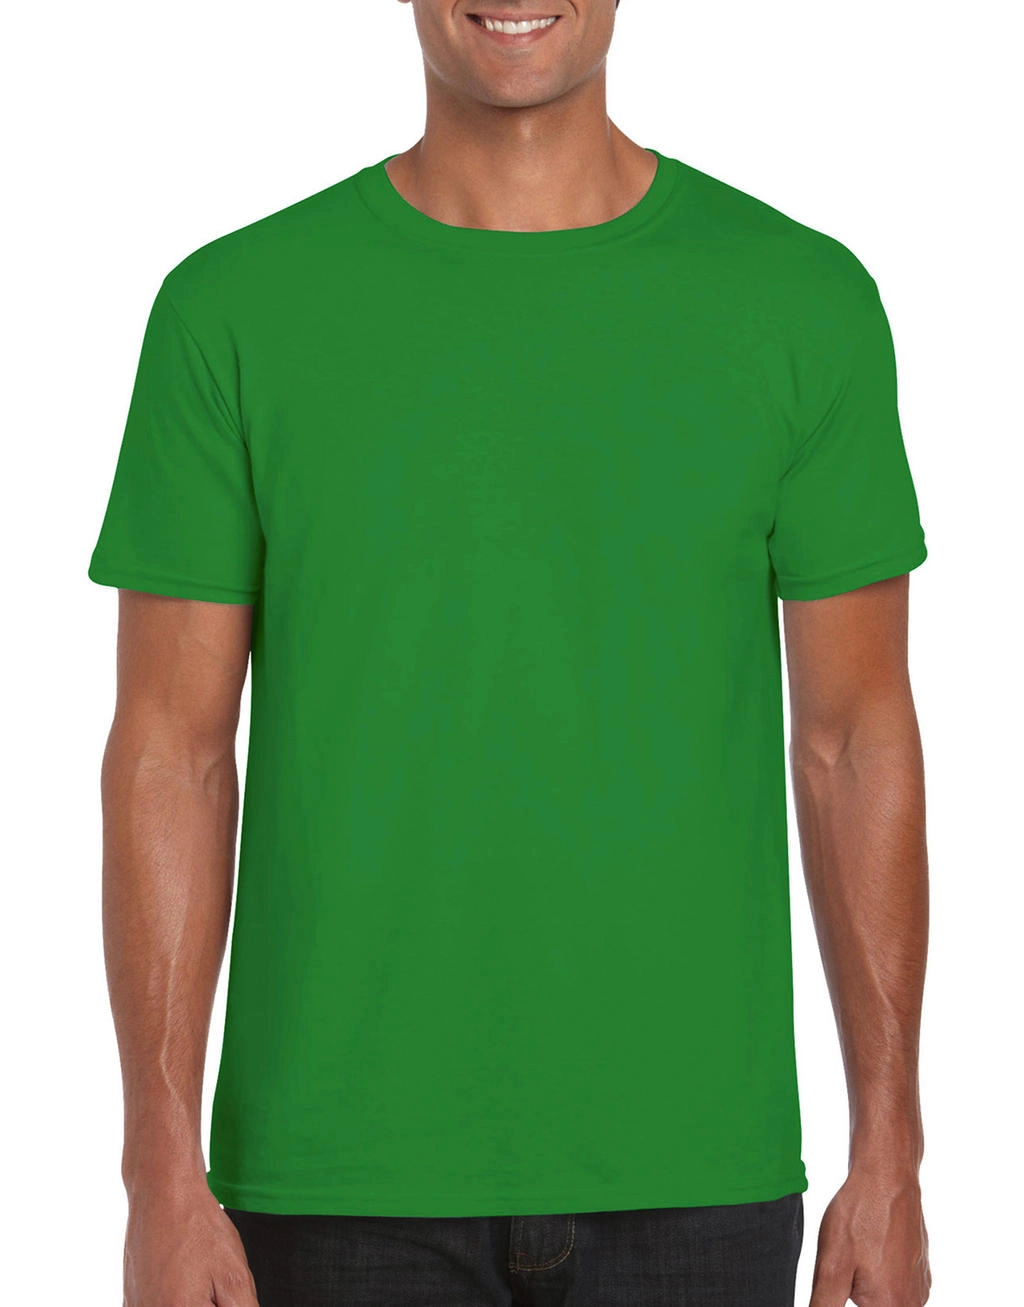 Softstyle® Ring Spun T-Shirt zum Besticken und Bedrucken in der Farbe Irish Green mit Ihren Logo, Schriftzug oder Motiv.